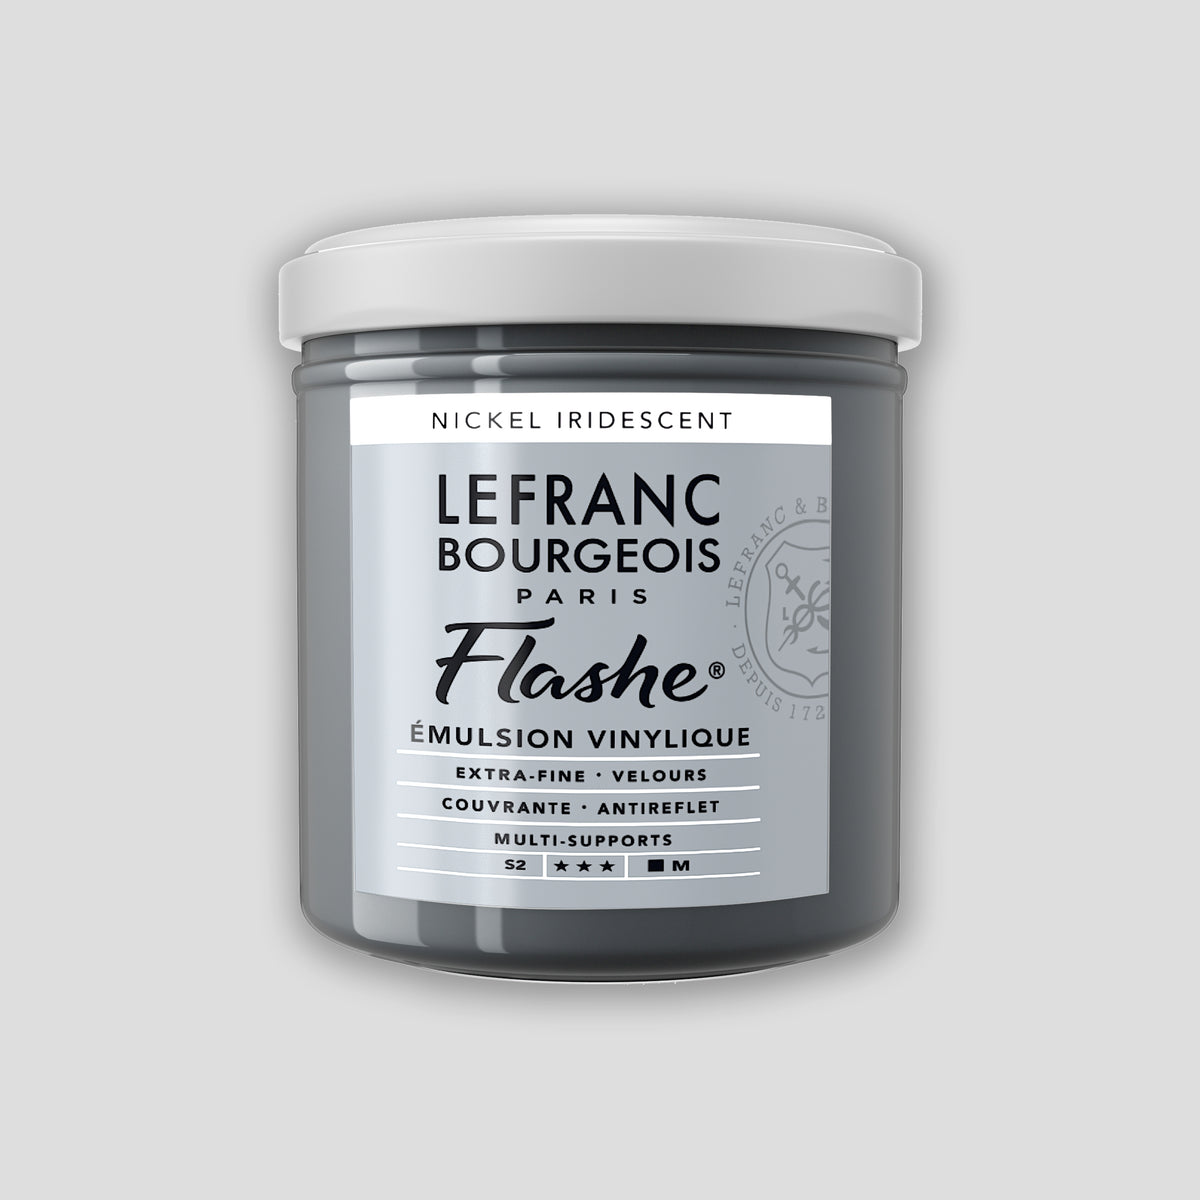 Lefranc Bourgeois Flashe Acrylverf 125ml Nickel Iridescent 2